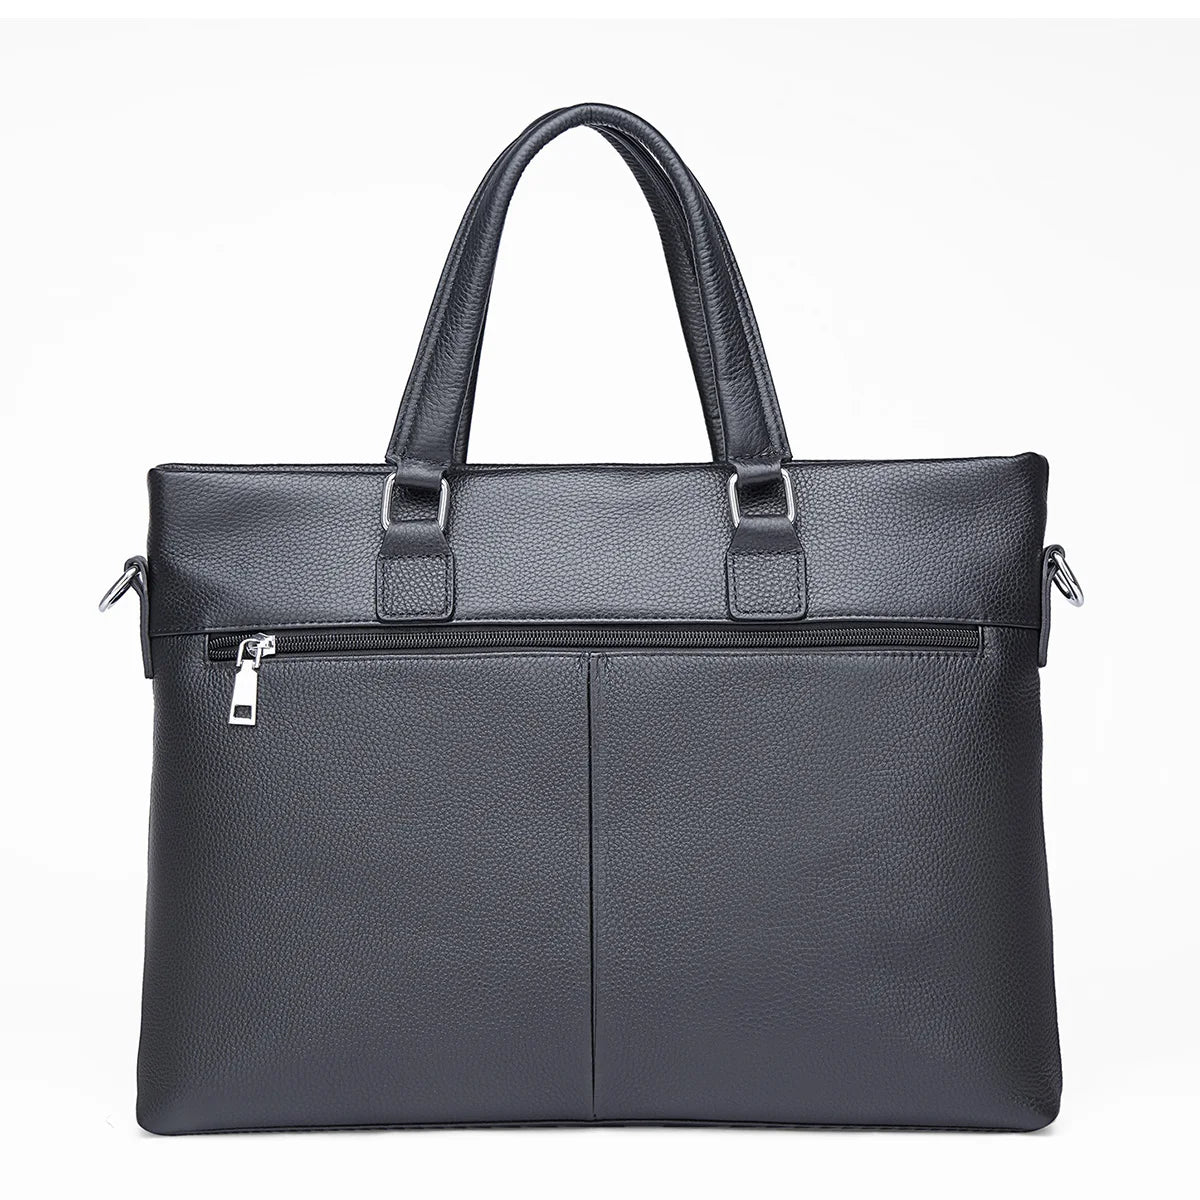 BISONDENIM Man Business Briefcase Bag Split Leather For 14 inch Laptop